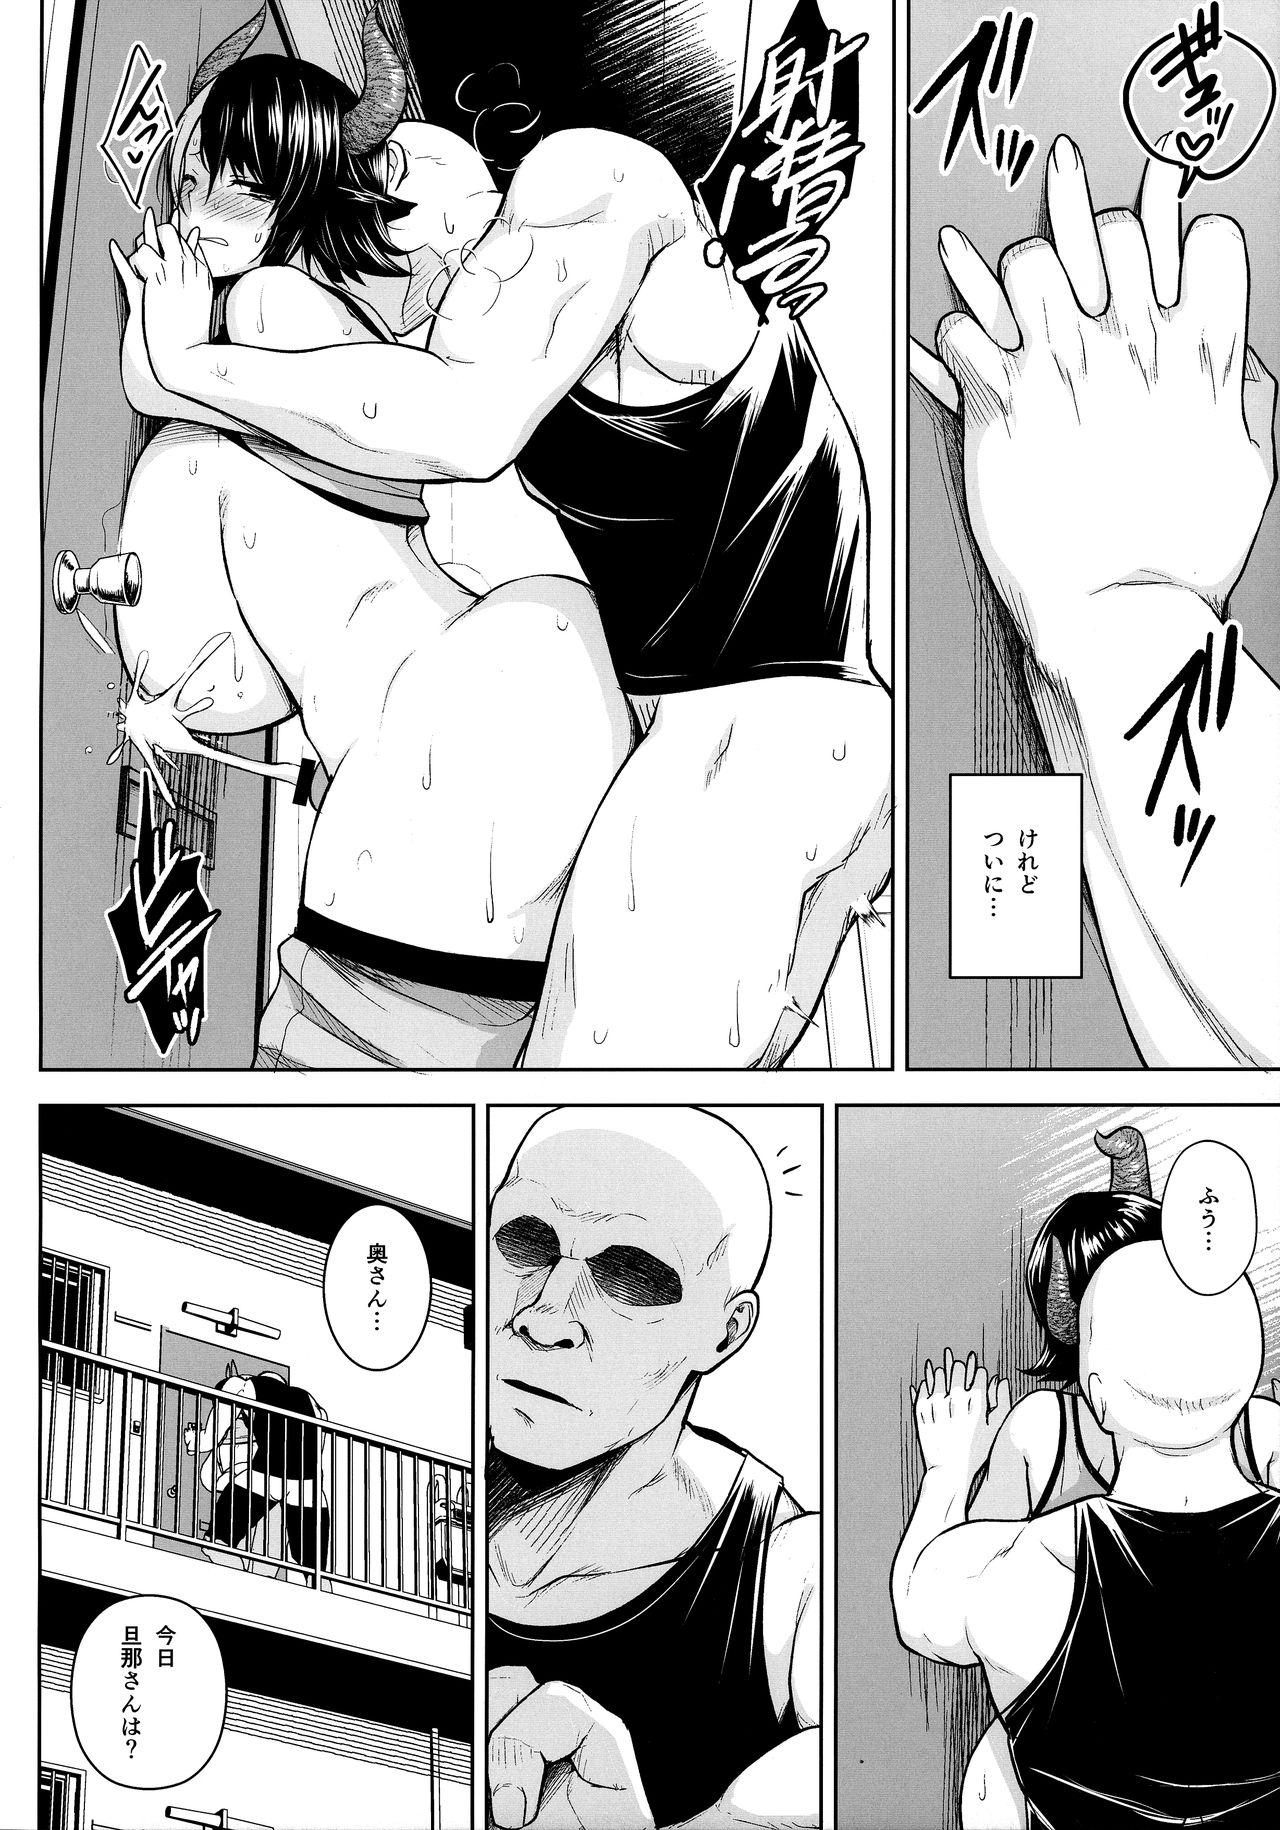 Spycam Oku-san no Oppai ga Dekasugiru no ga Warui! 3 - Touhou project Nudist - Page 11